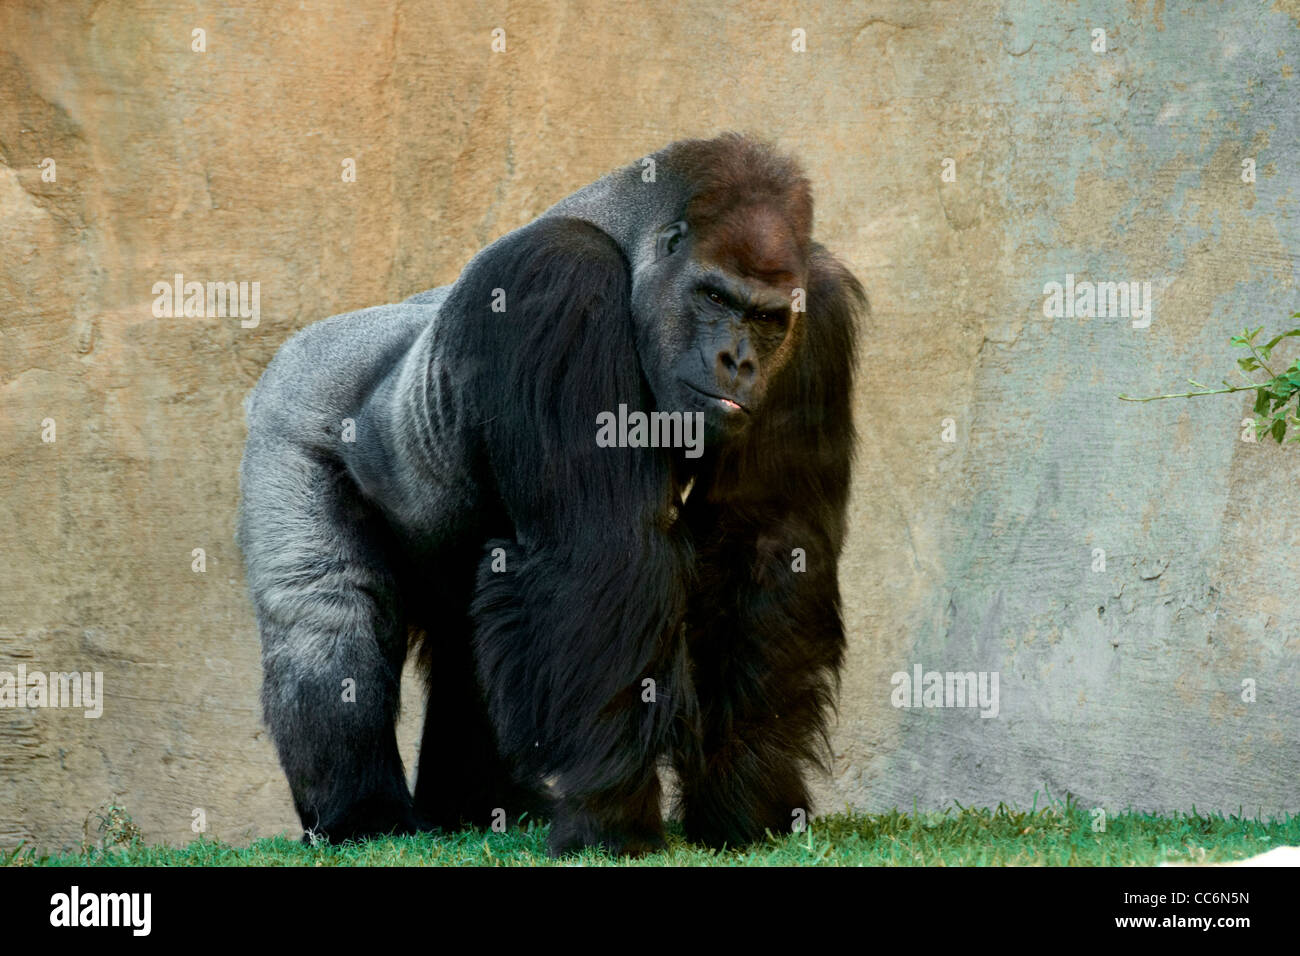 Gorilla, Menschenaffen, in Gefangenschaft Stockfoto